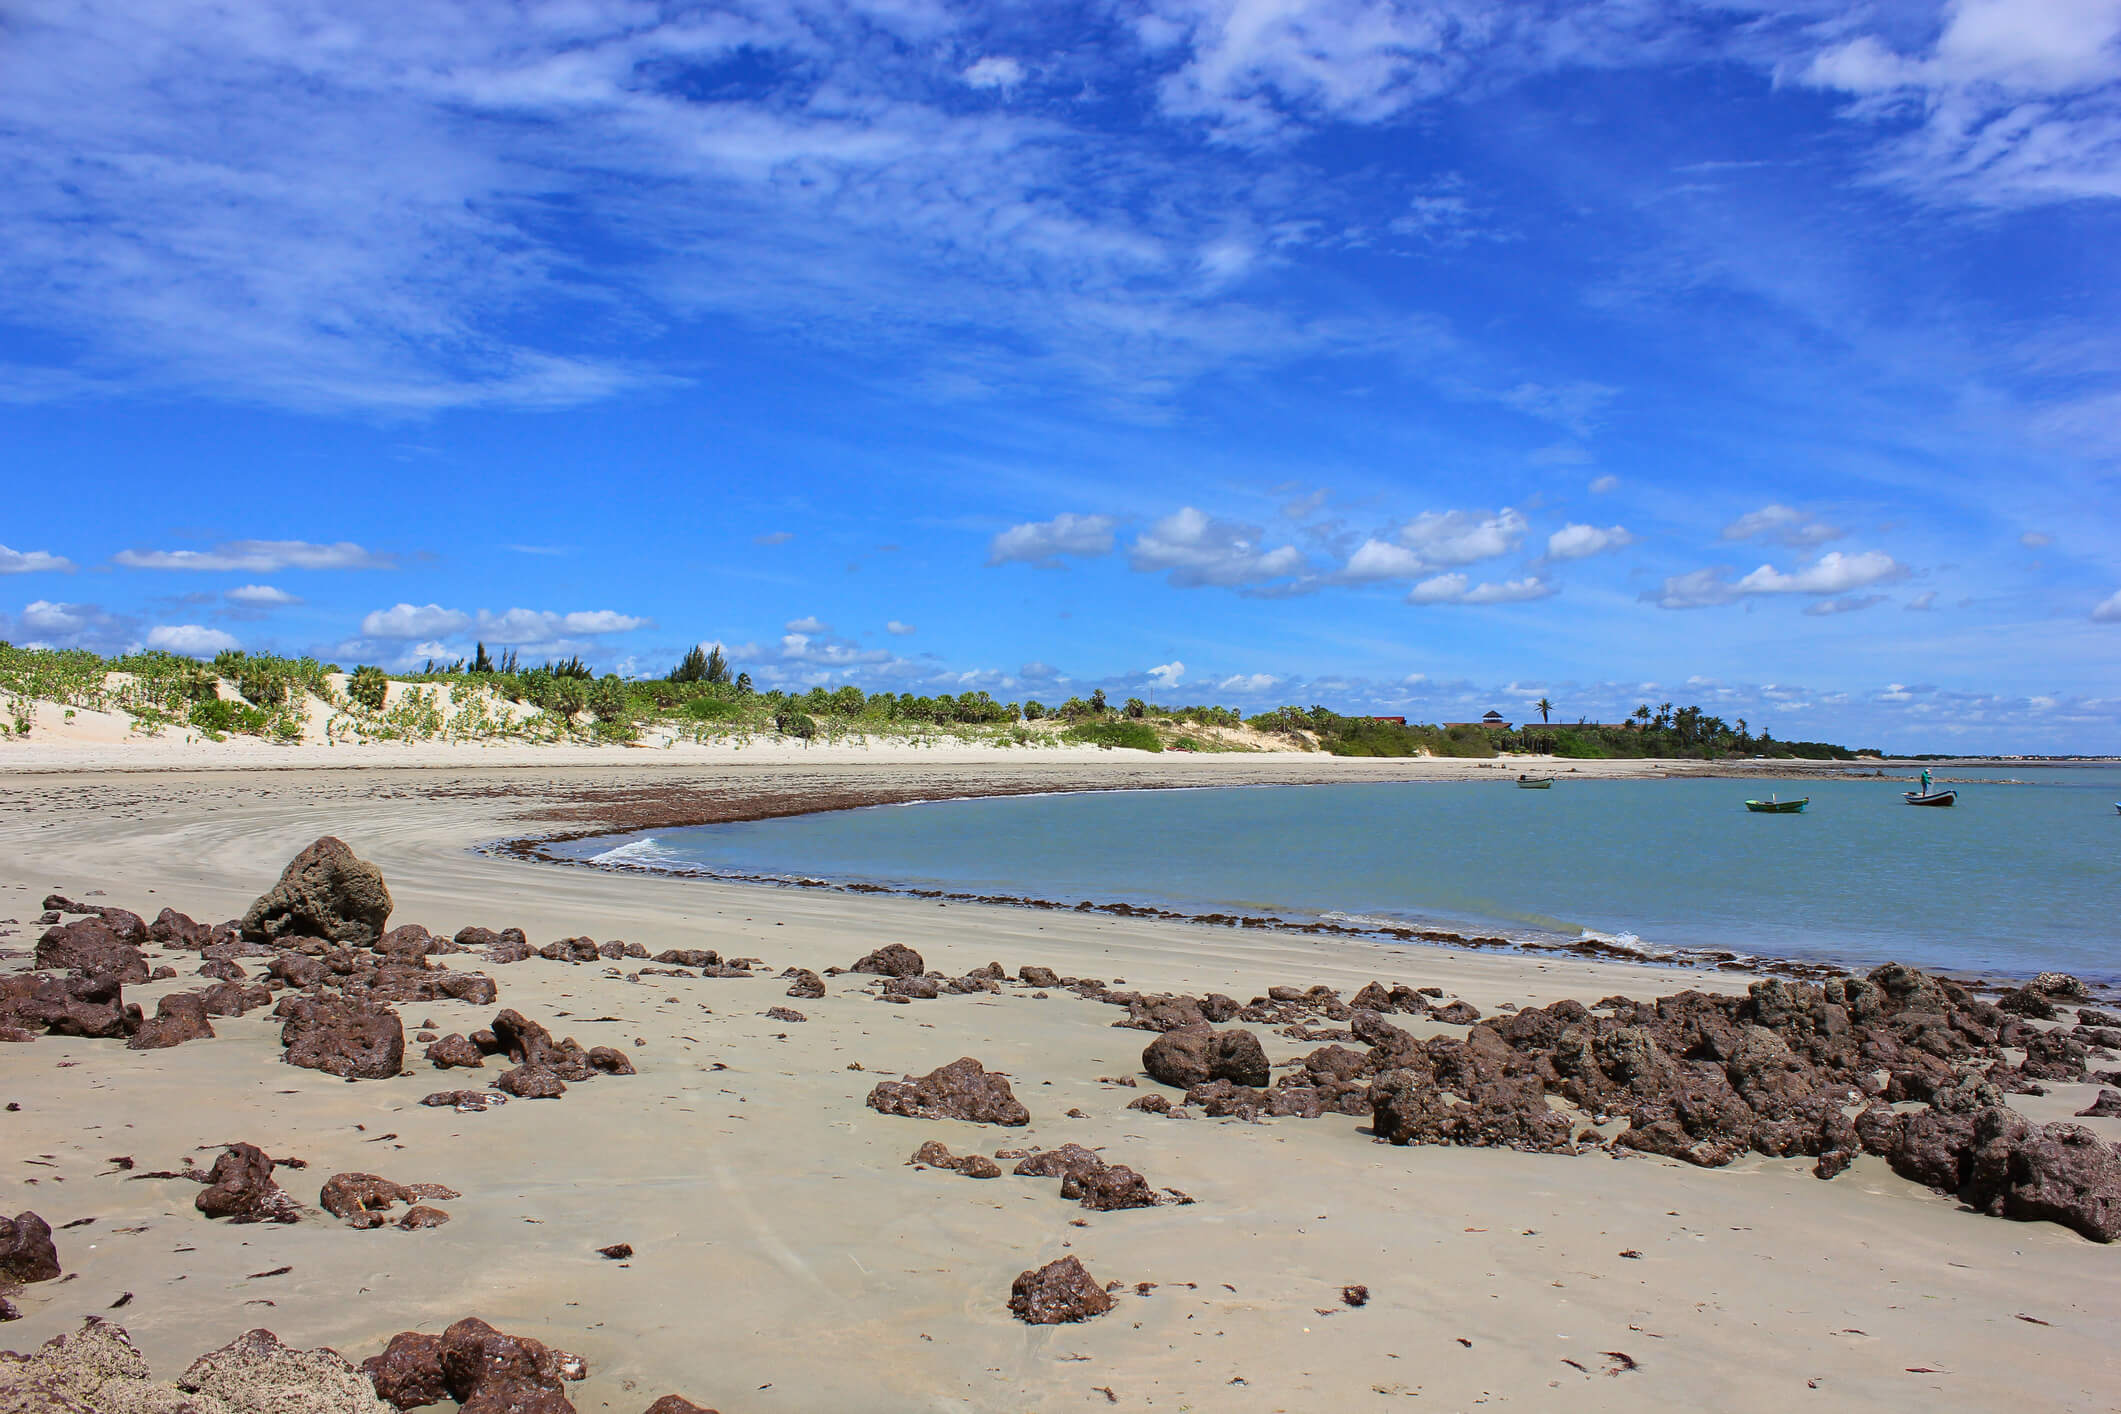 A Praia de Macapa é mais um lugarzinho secreto localizado no